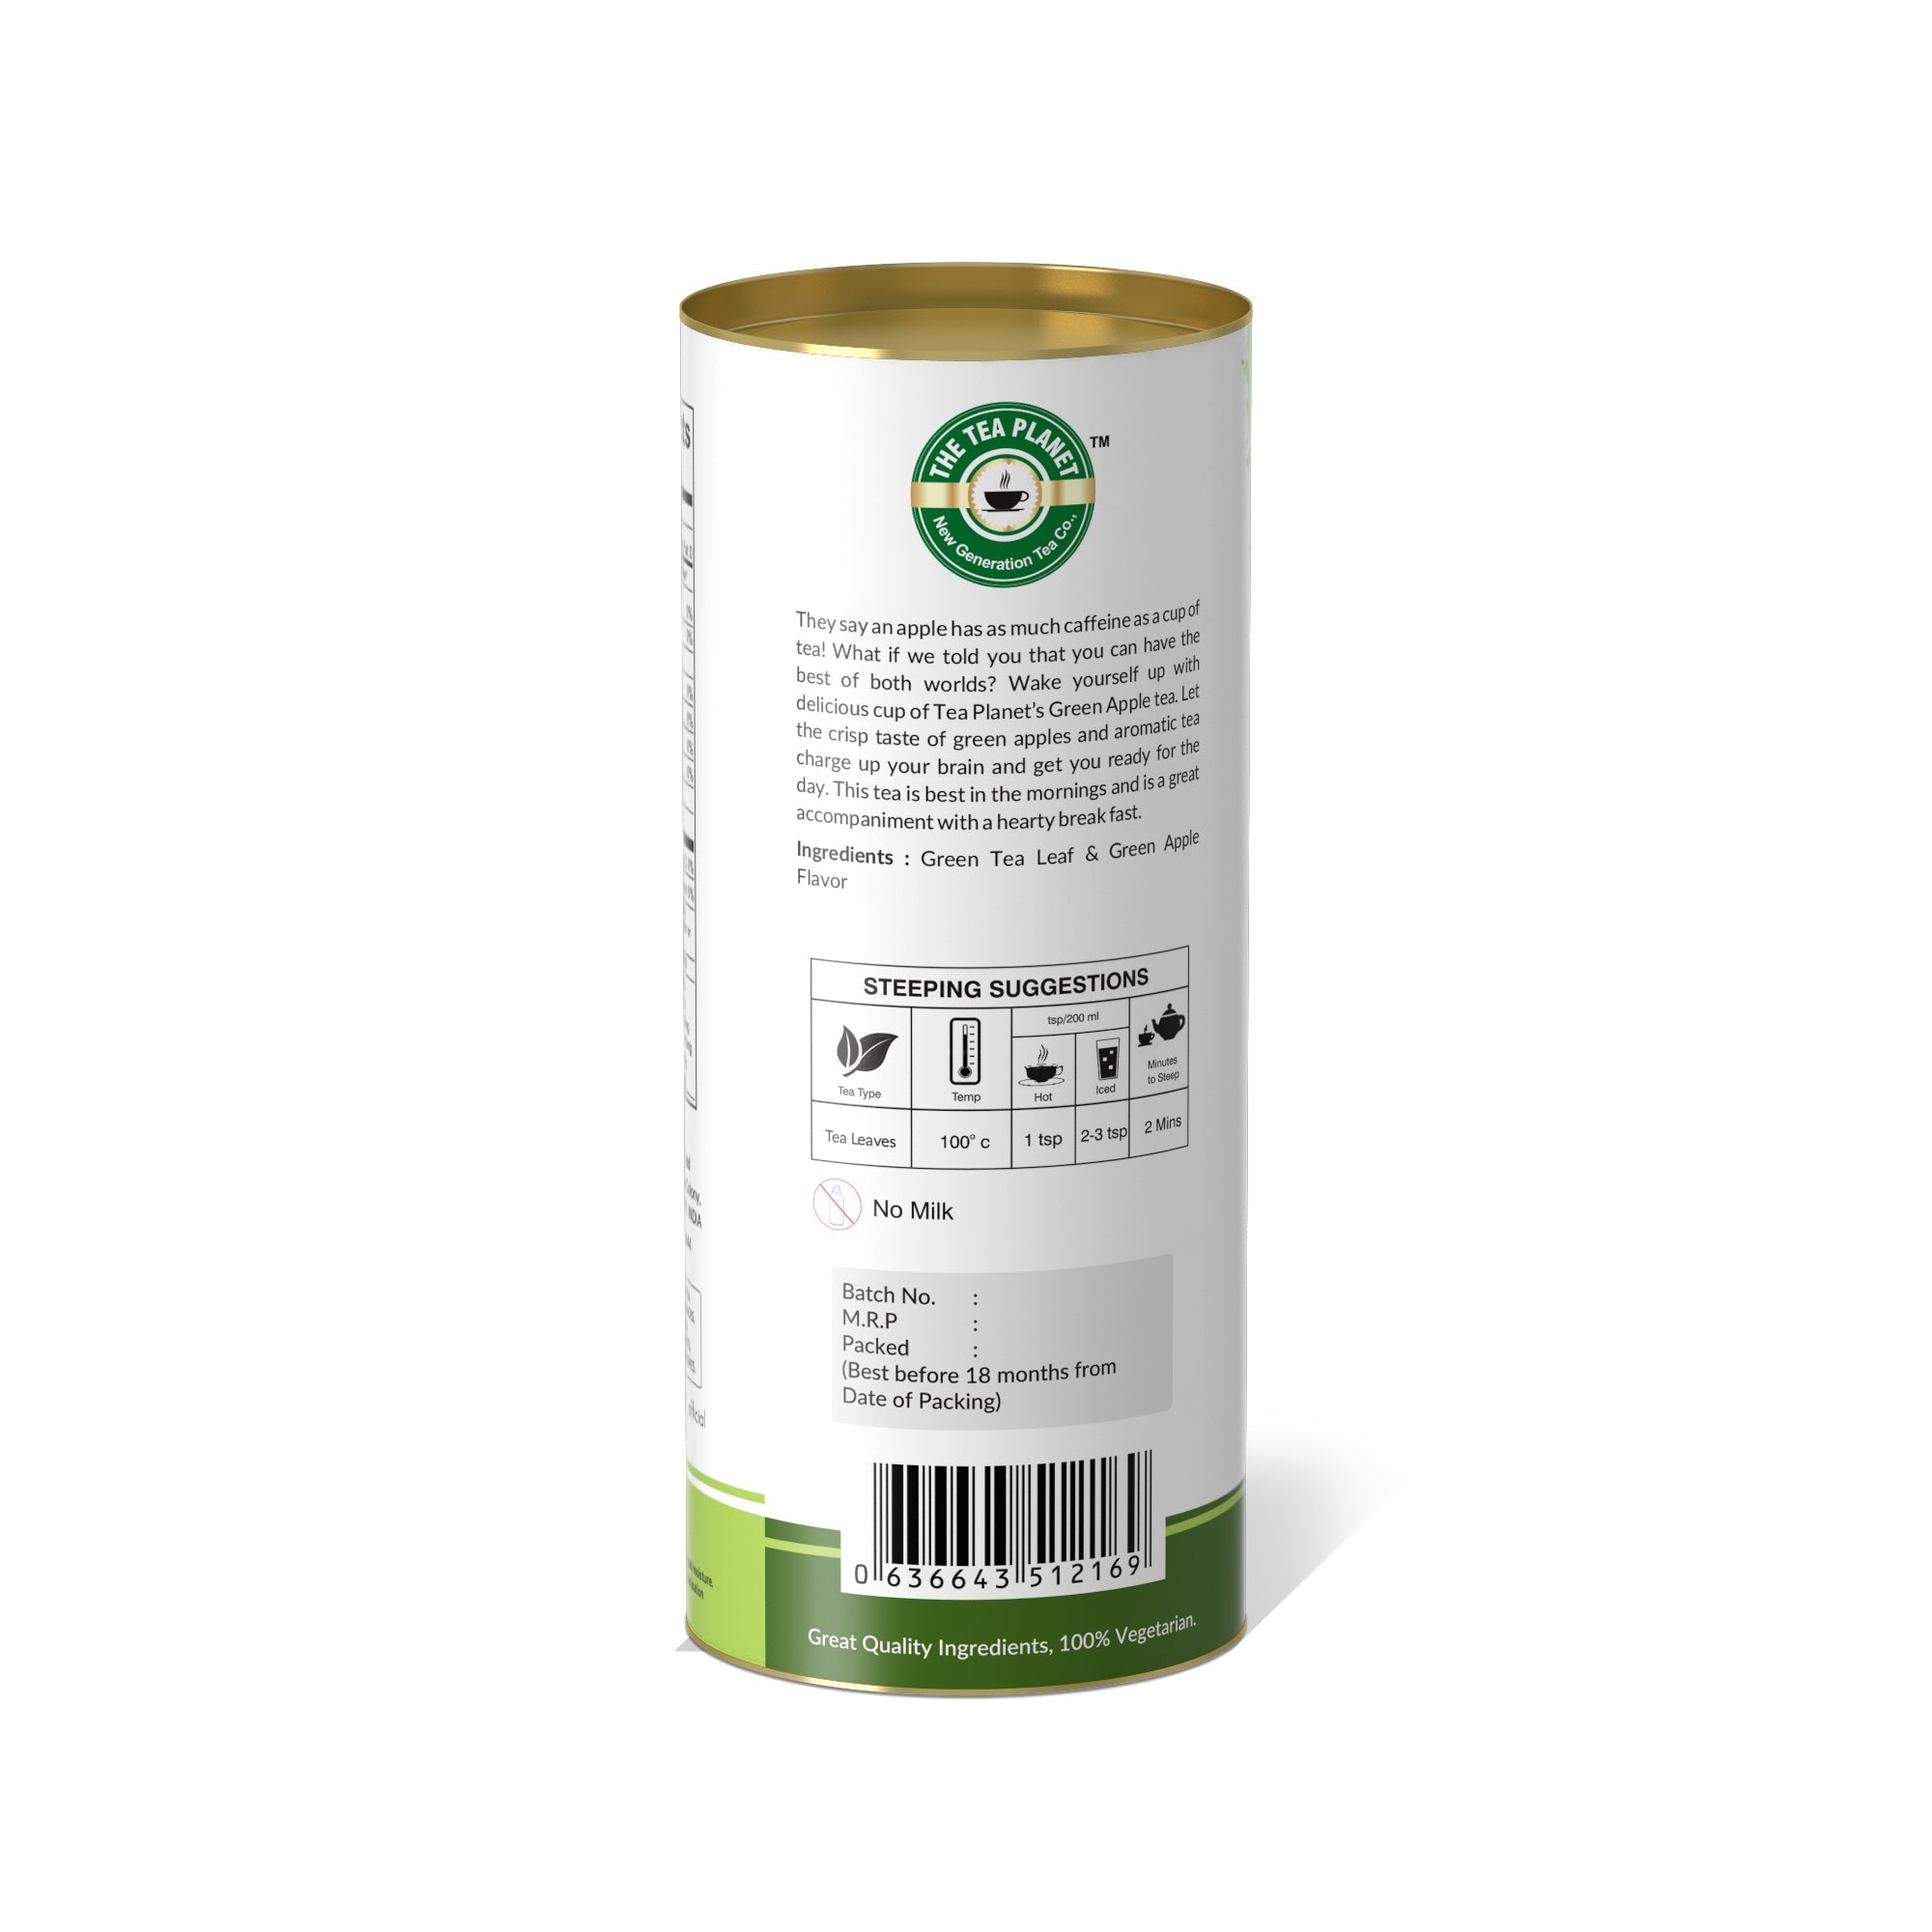 Green apple Orthodox Tea - 50 gms